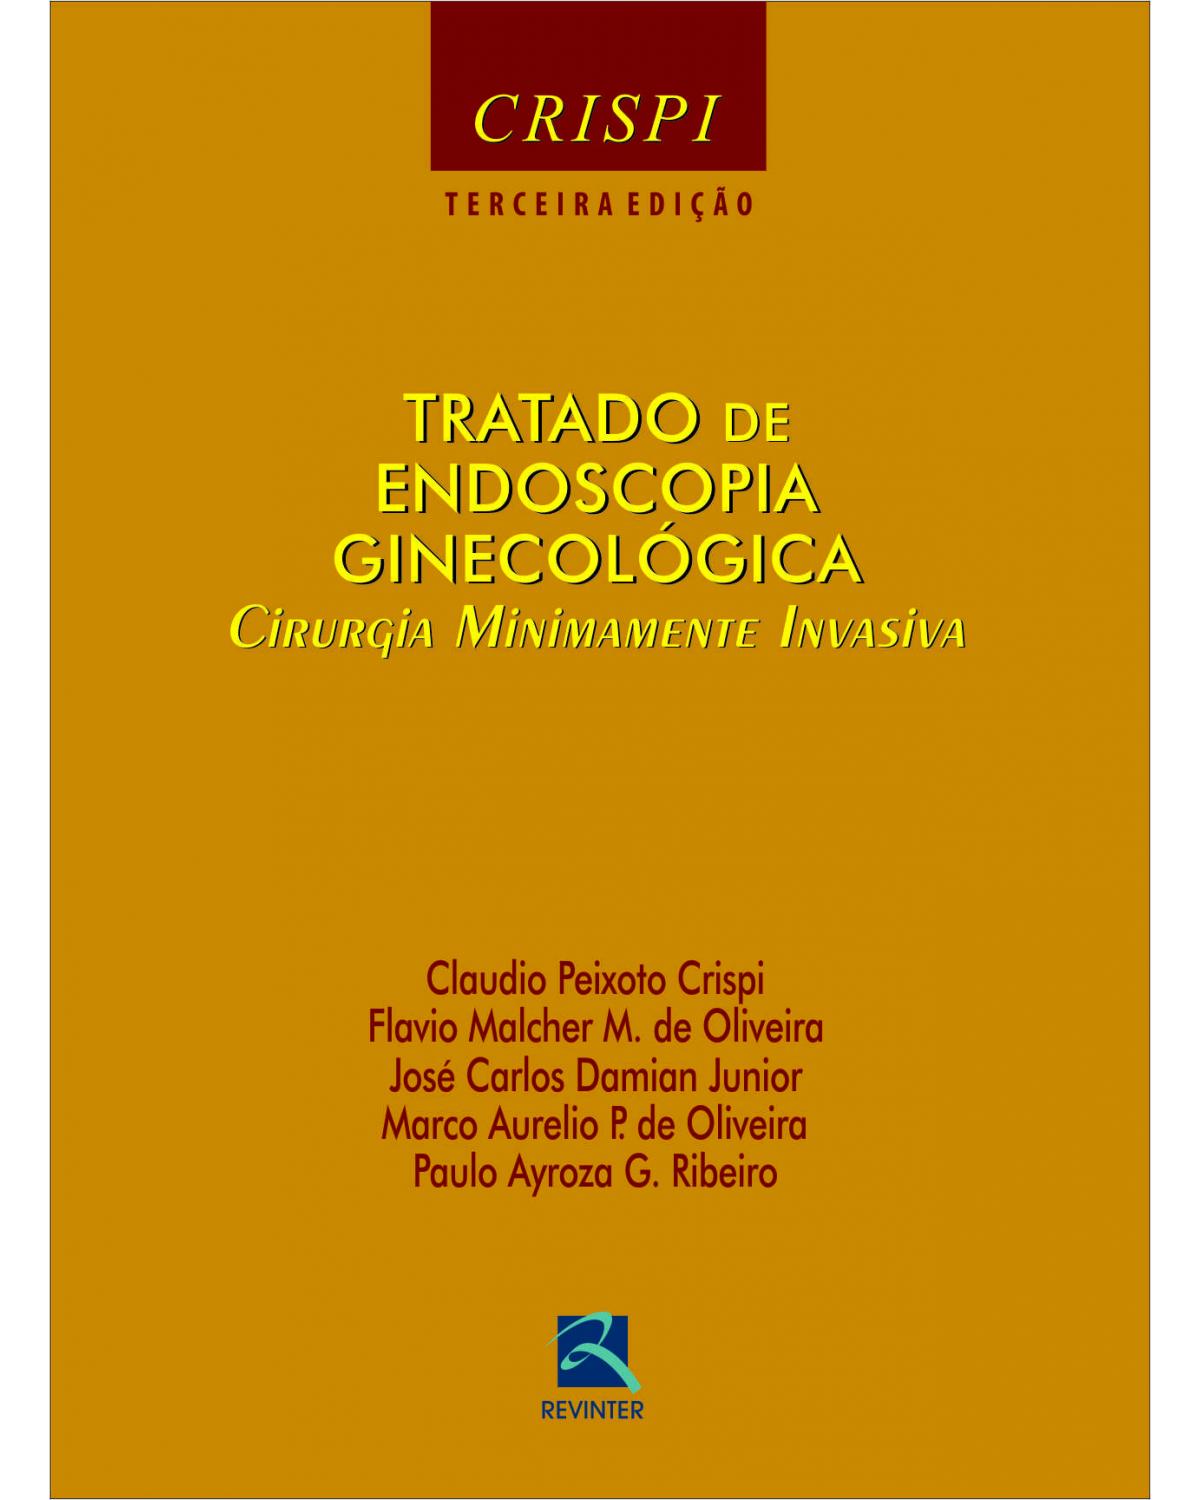 Tratado de endoscopia ginecológica - cirurgia minimamente invavisa - 3ª Edição | 2012